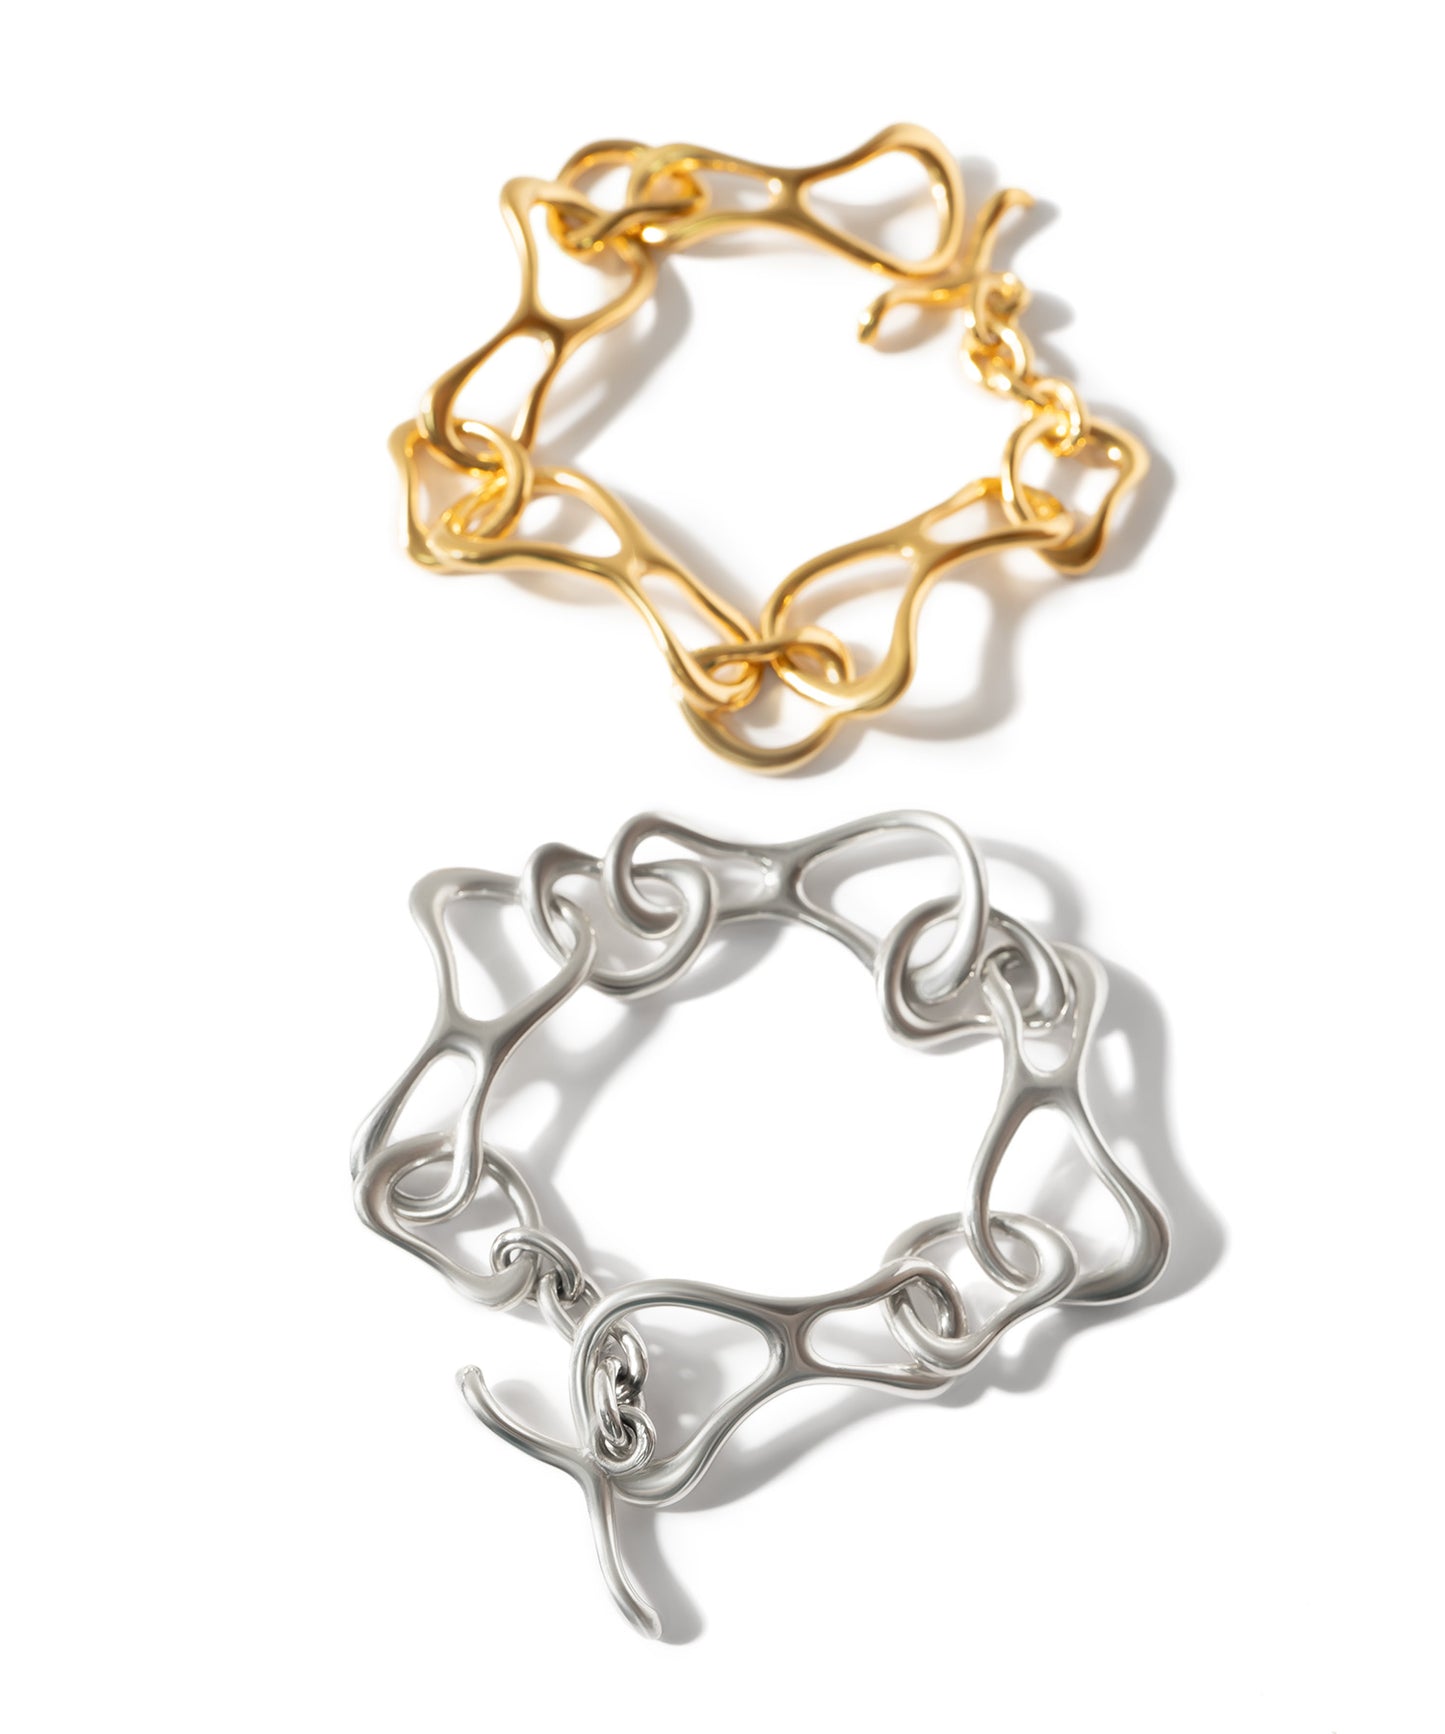 Silver925 Infinity Chain Bracelet | PALLAS BRACELET